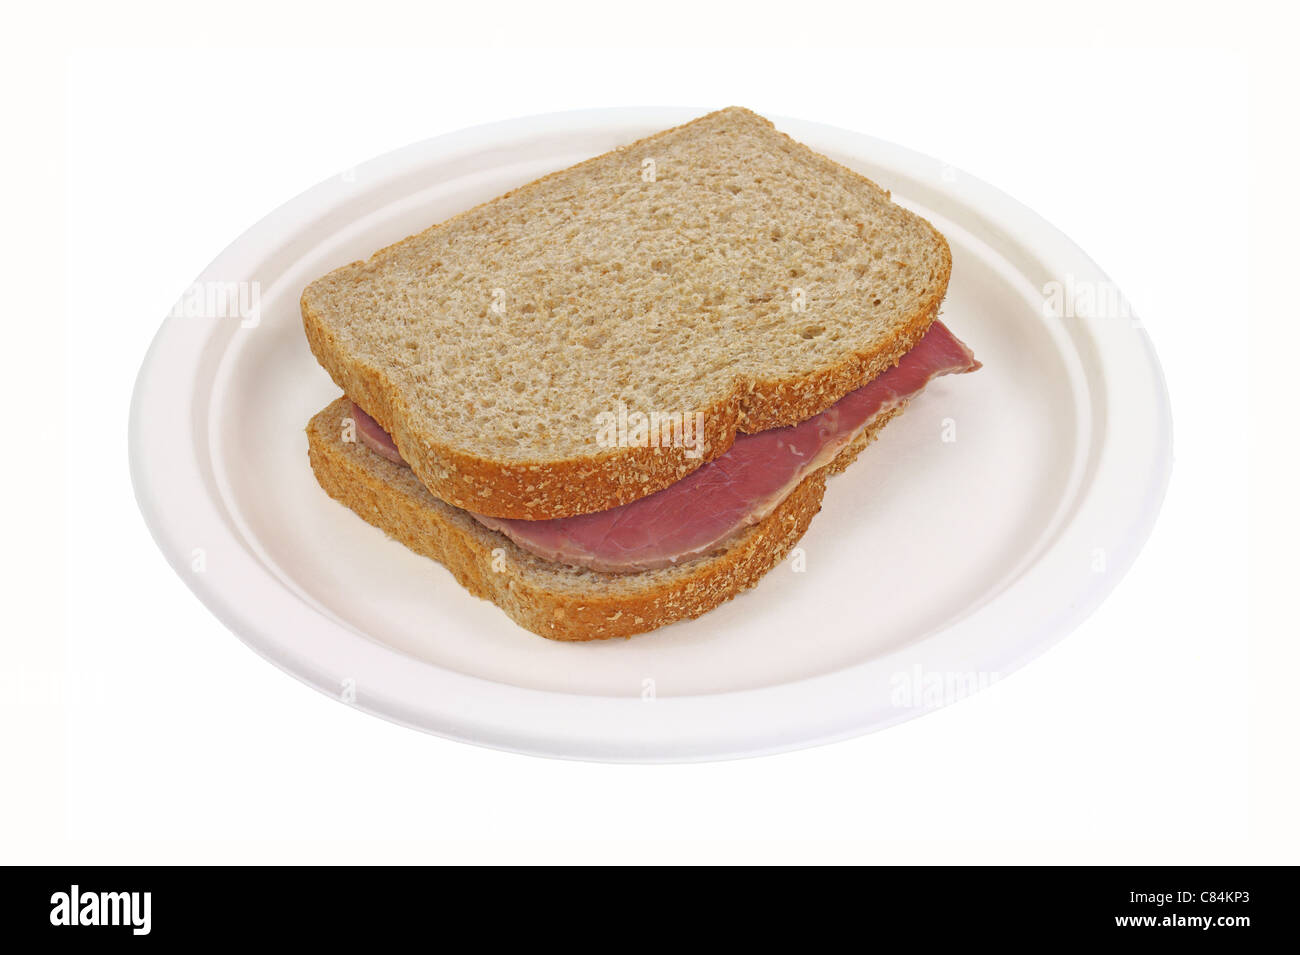 Le corned-beef sandwich sur assiette en carton Banque D'Images